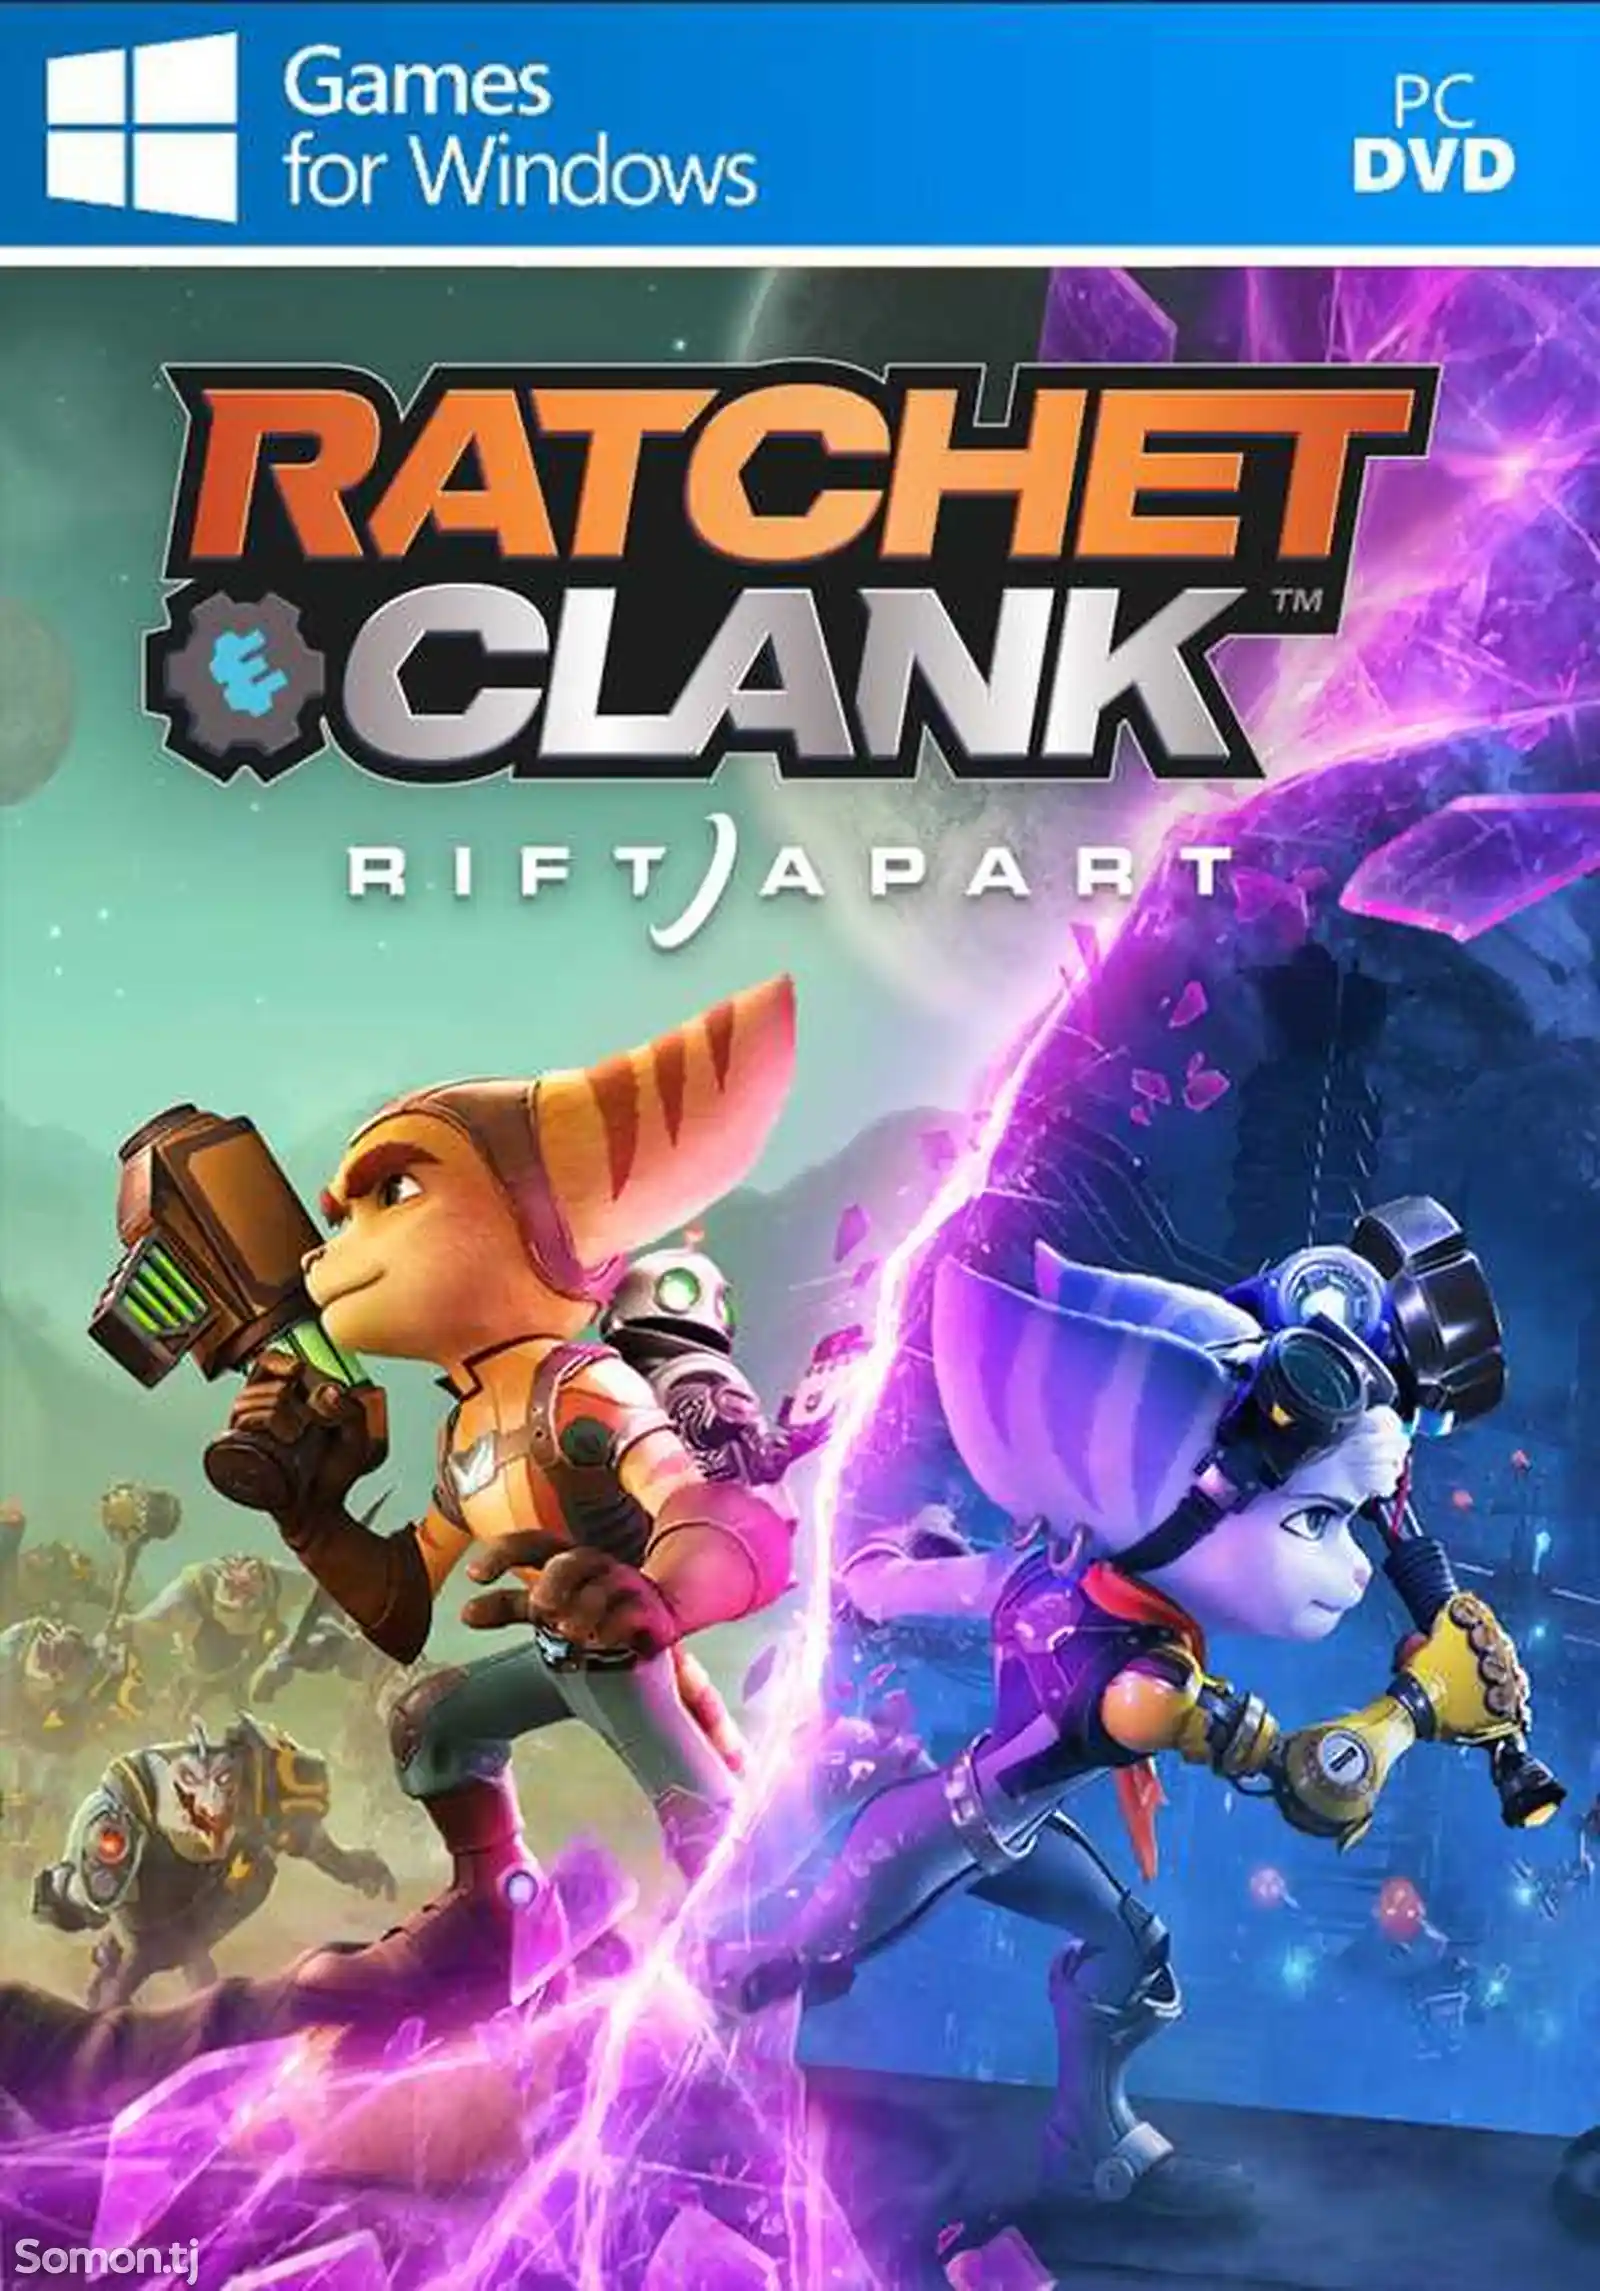 Игра Ratchet and clank rift apart для компьютера-пк-pc-1